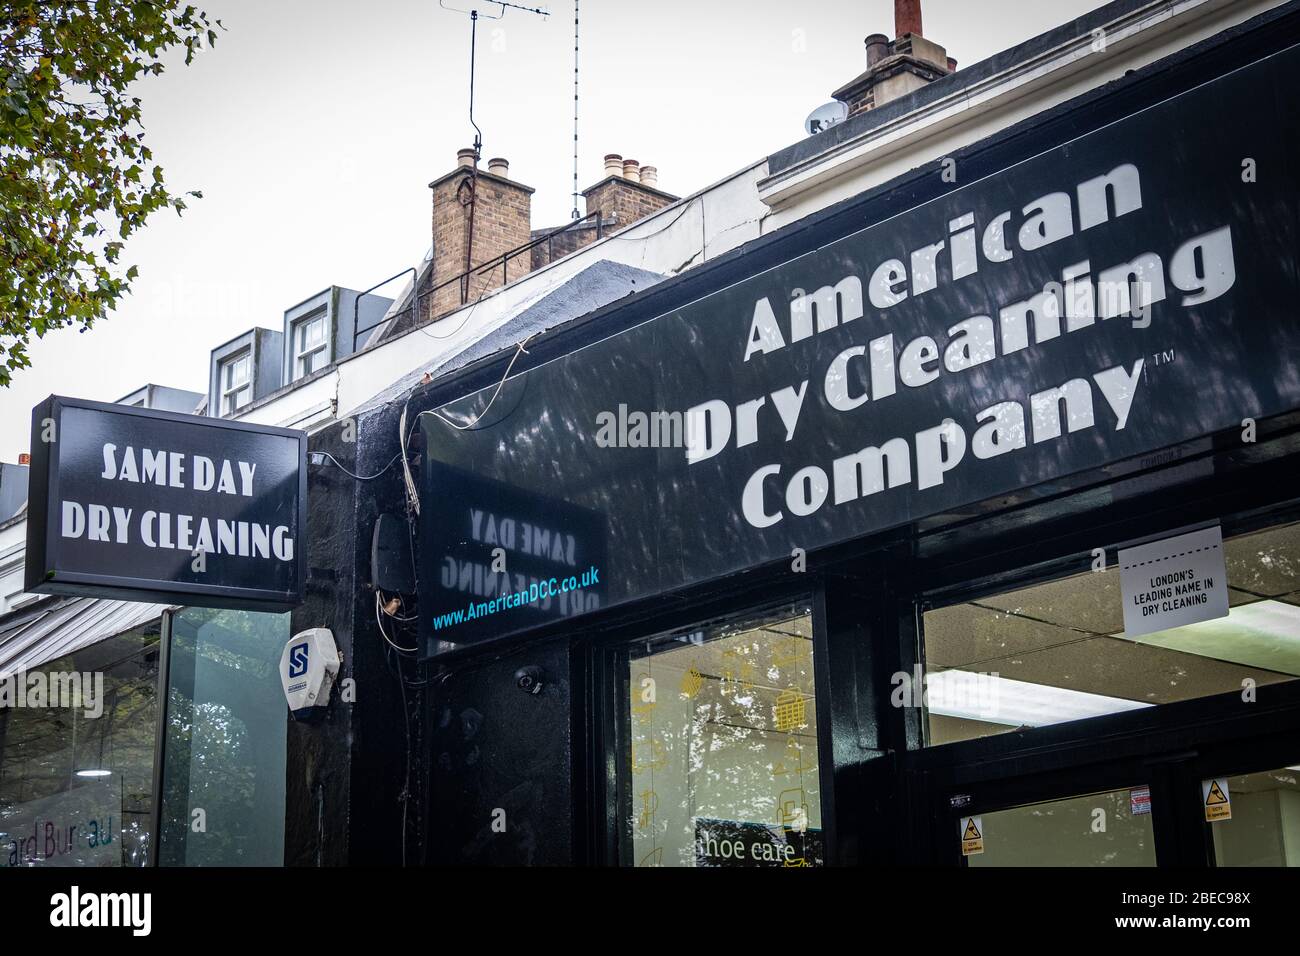 LONDRES-OCTUBRE, 2019: Tienda exterior de la American Dry Cleaning Company, una cadena de tintorería y tiendas de lavandería principalmente en Londres Foto de stock